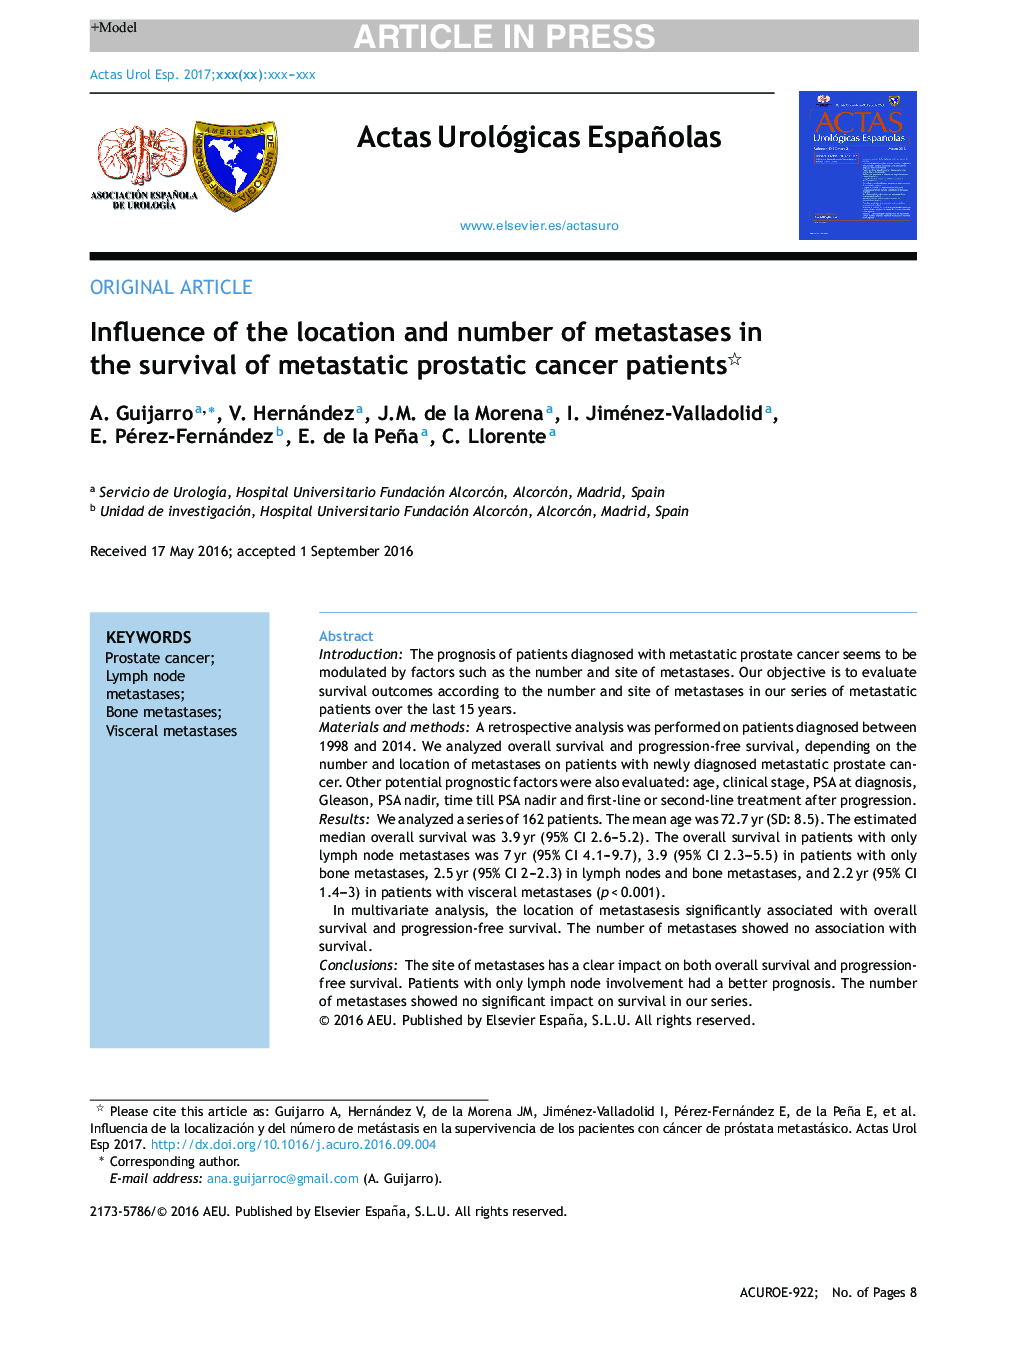 تأثیر محل و تعداد متاستازها در بقای بیماران مبتلا به سرطان متاستاتیک پروستات 